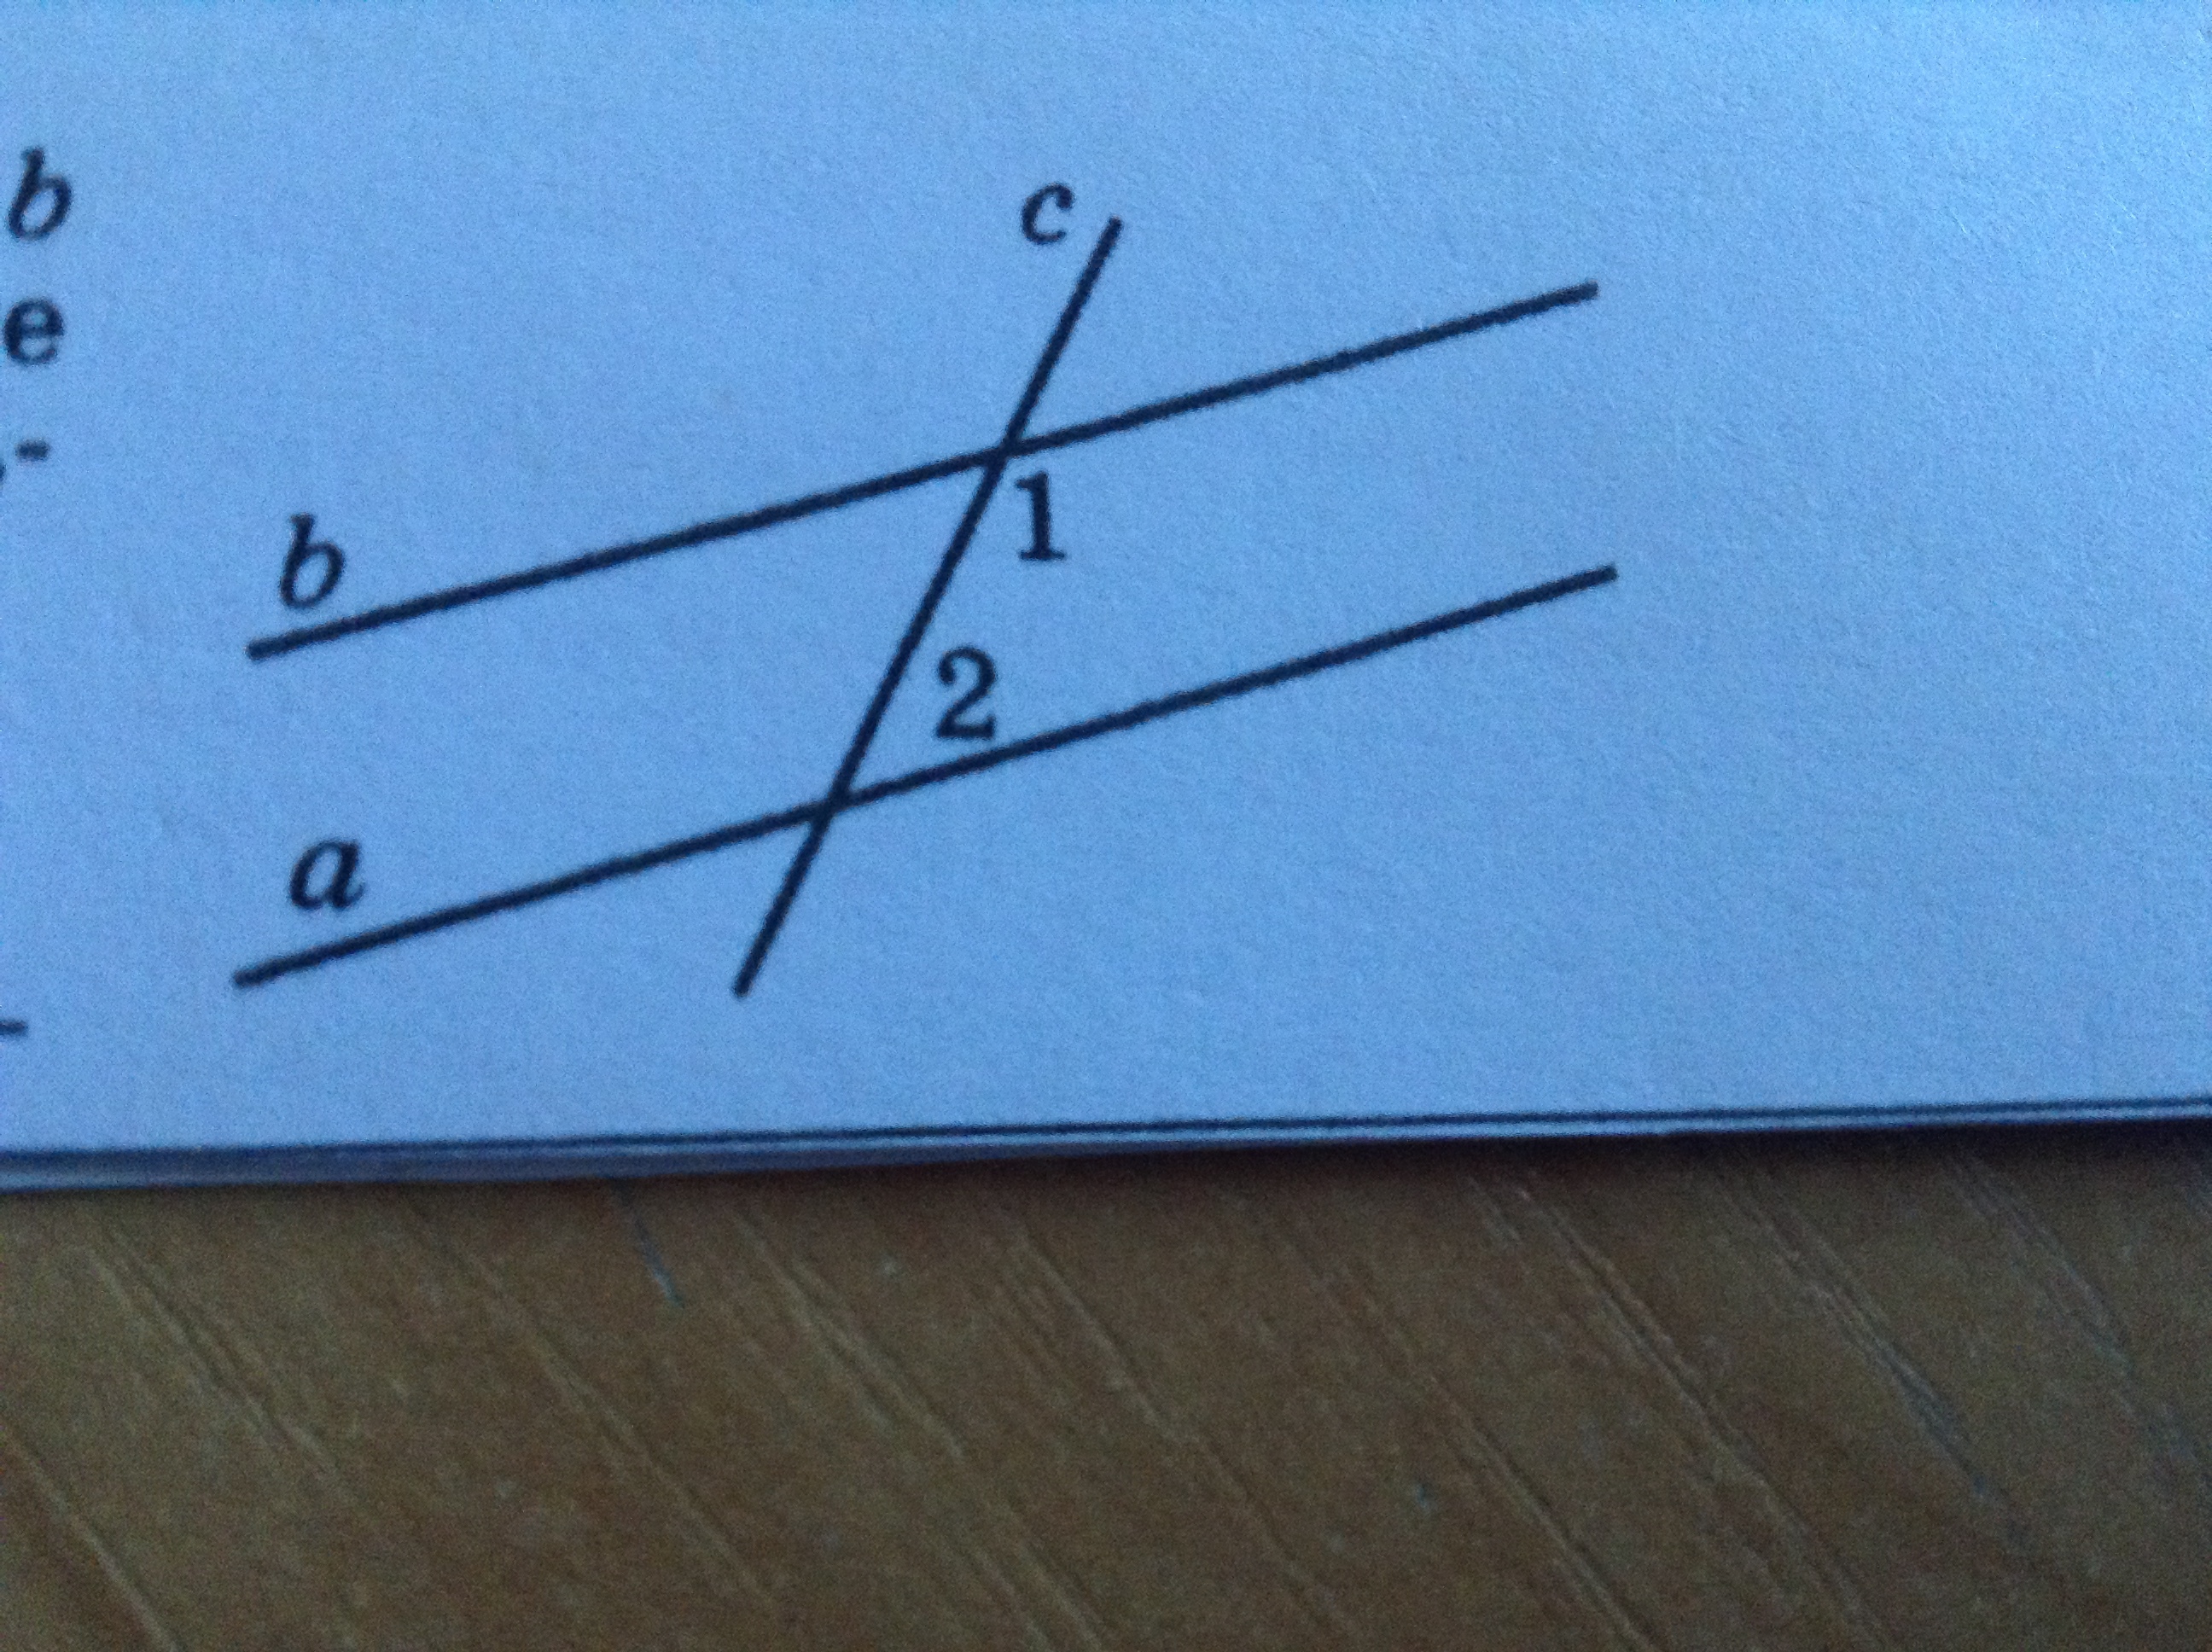 Даны две параллельные прямые а и б